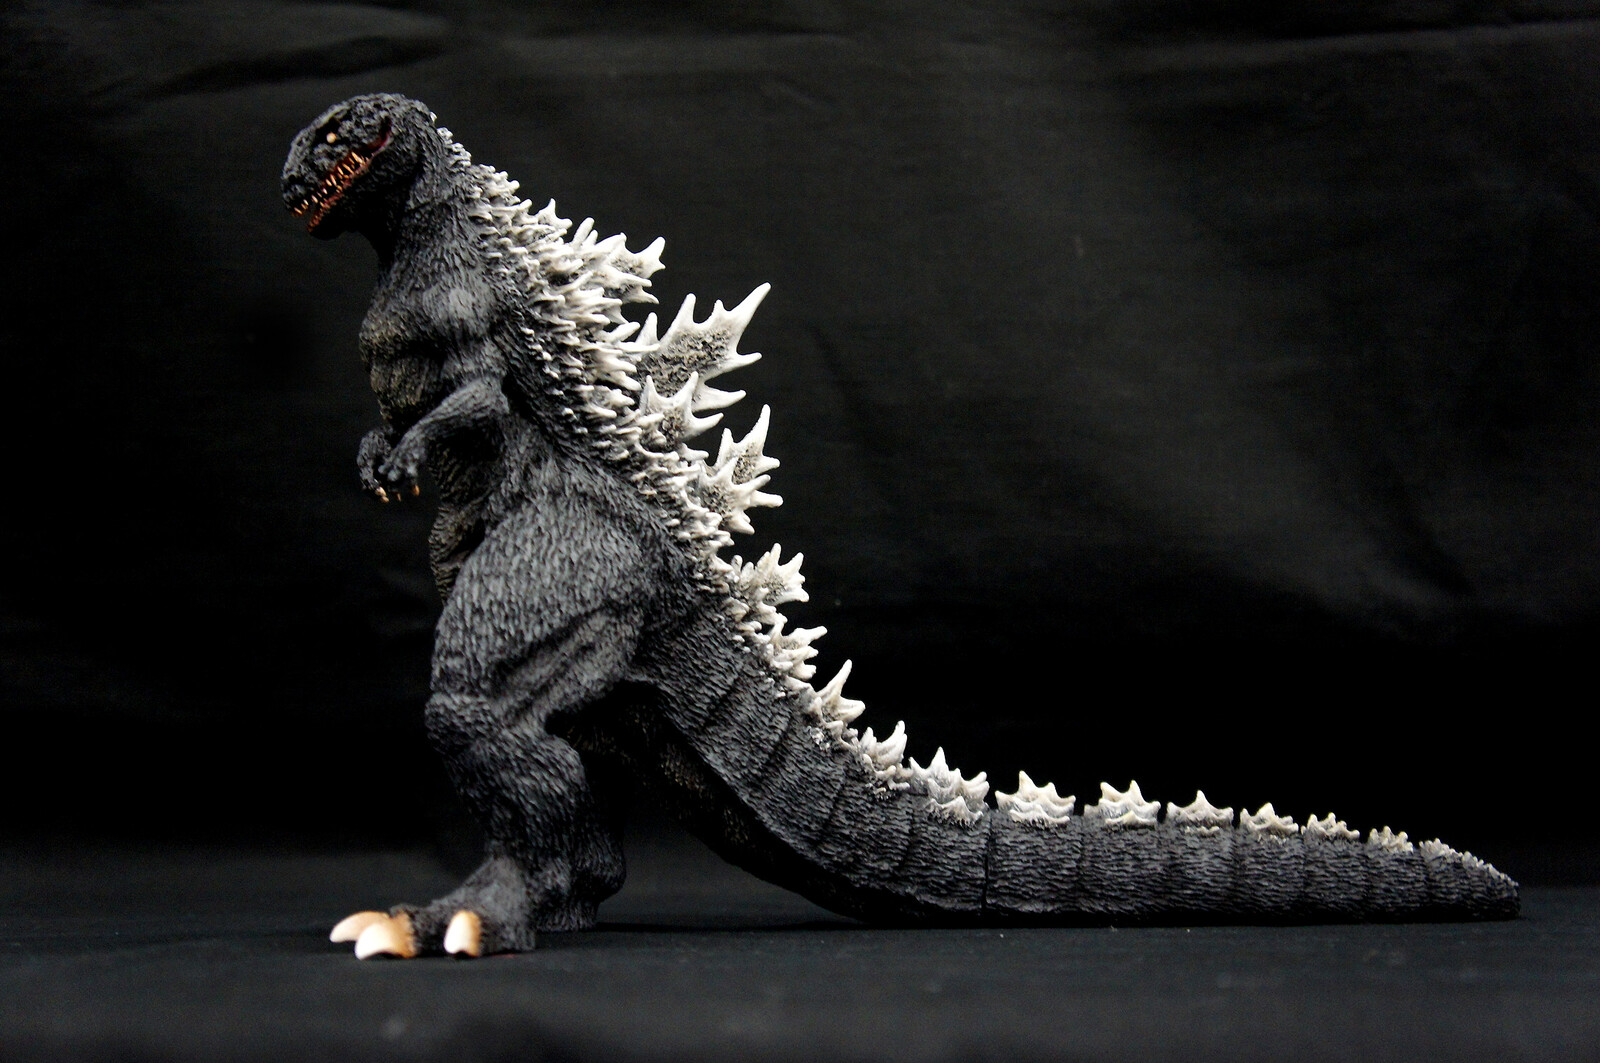 mage Version 1954 Godzilla Art Statue イメージ 初代ゴジラ